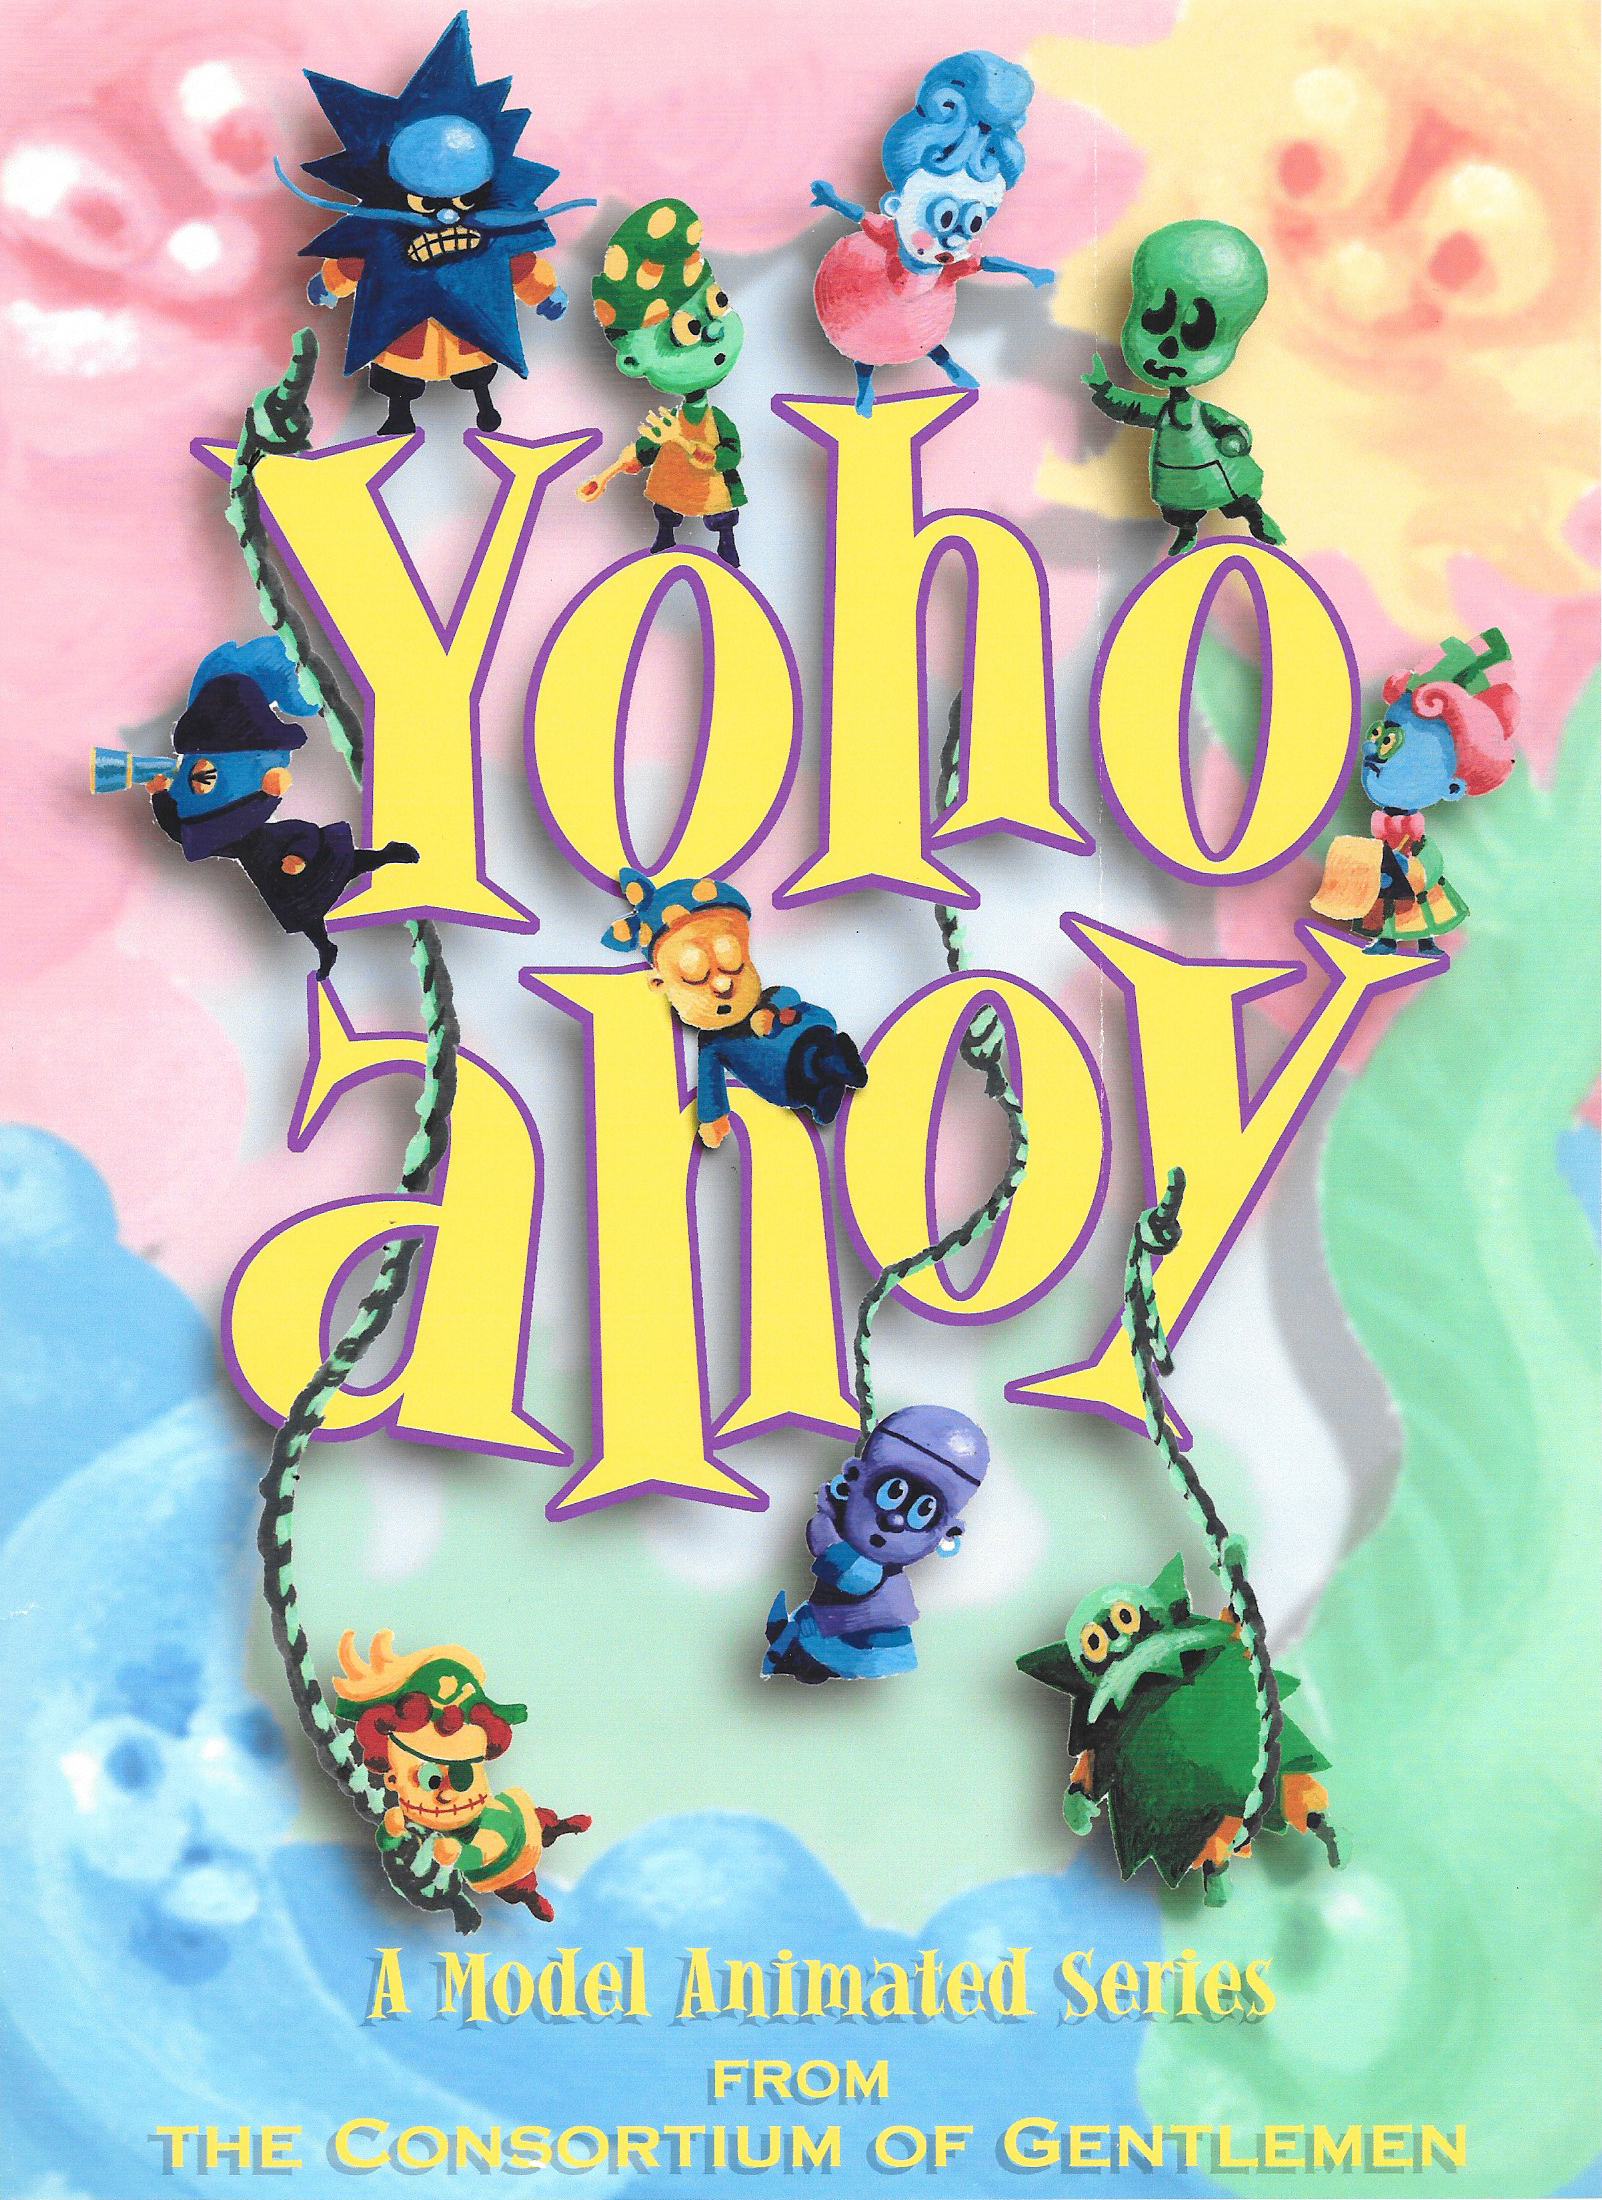 yoho-ahoy-2000